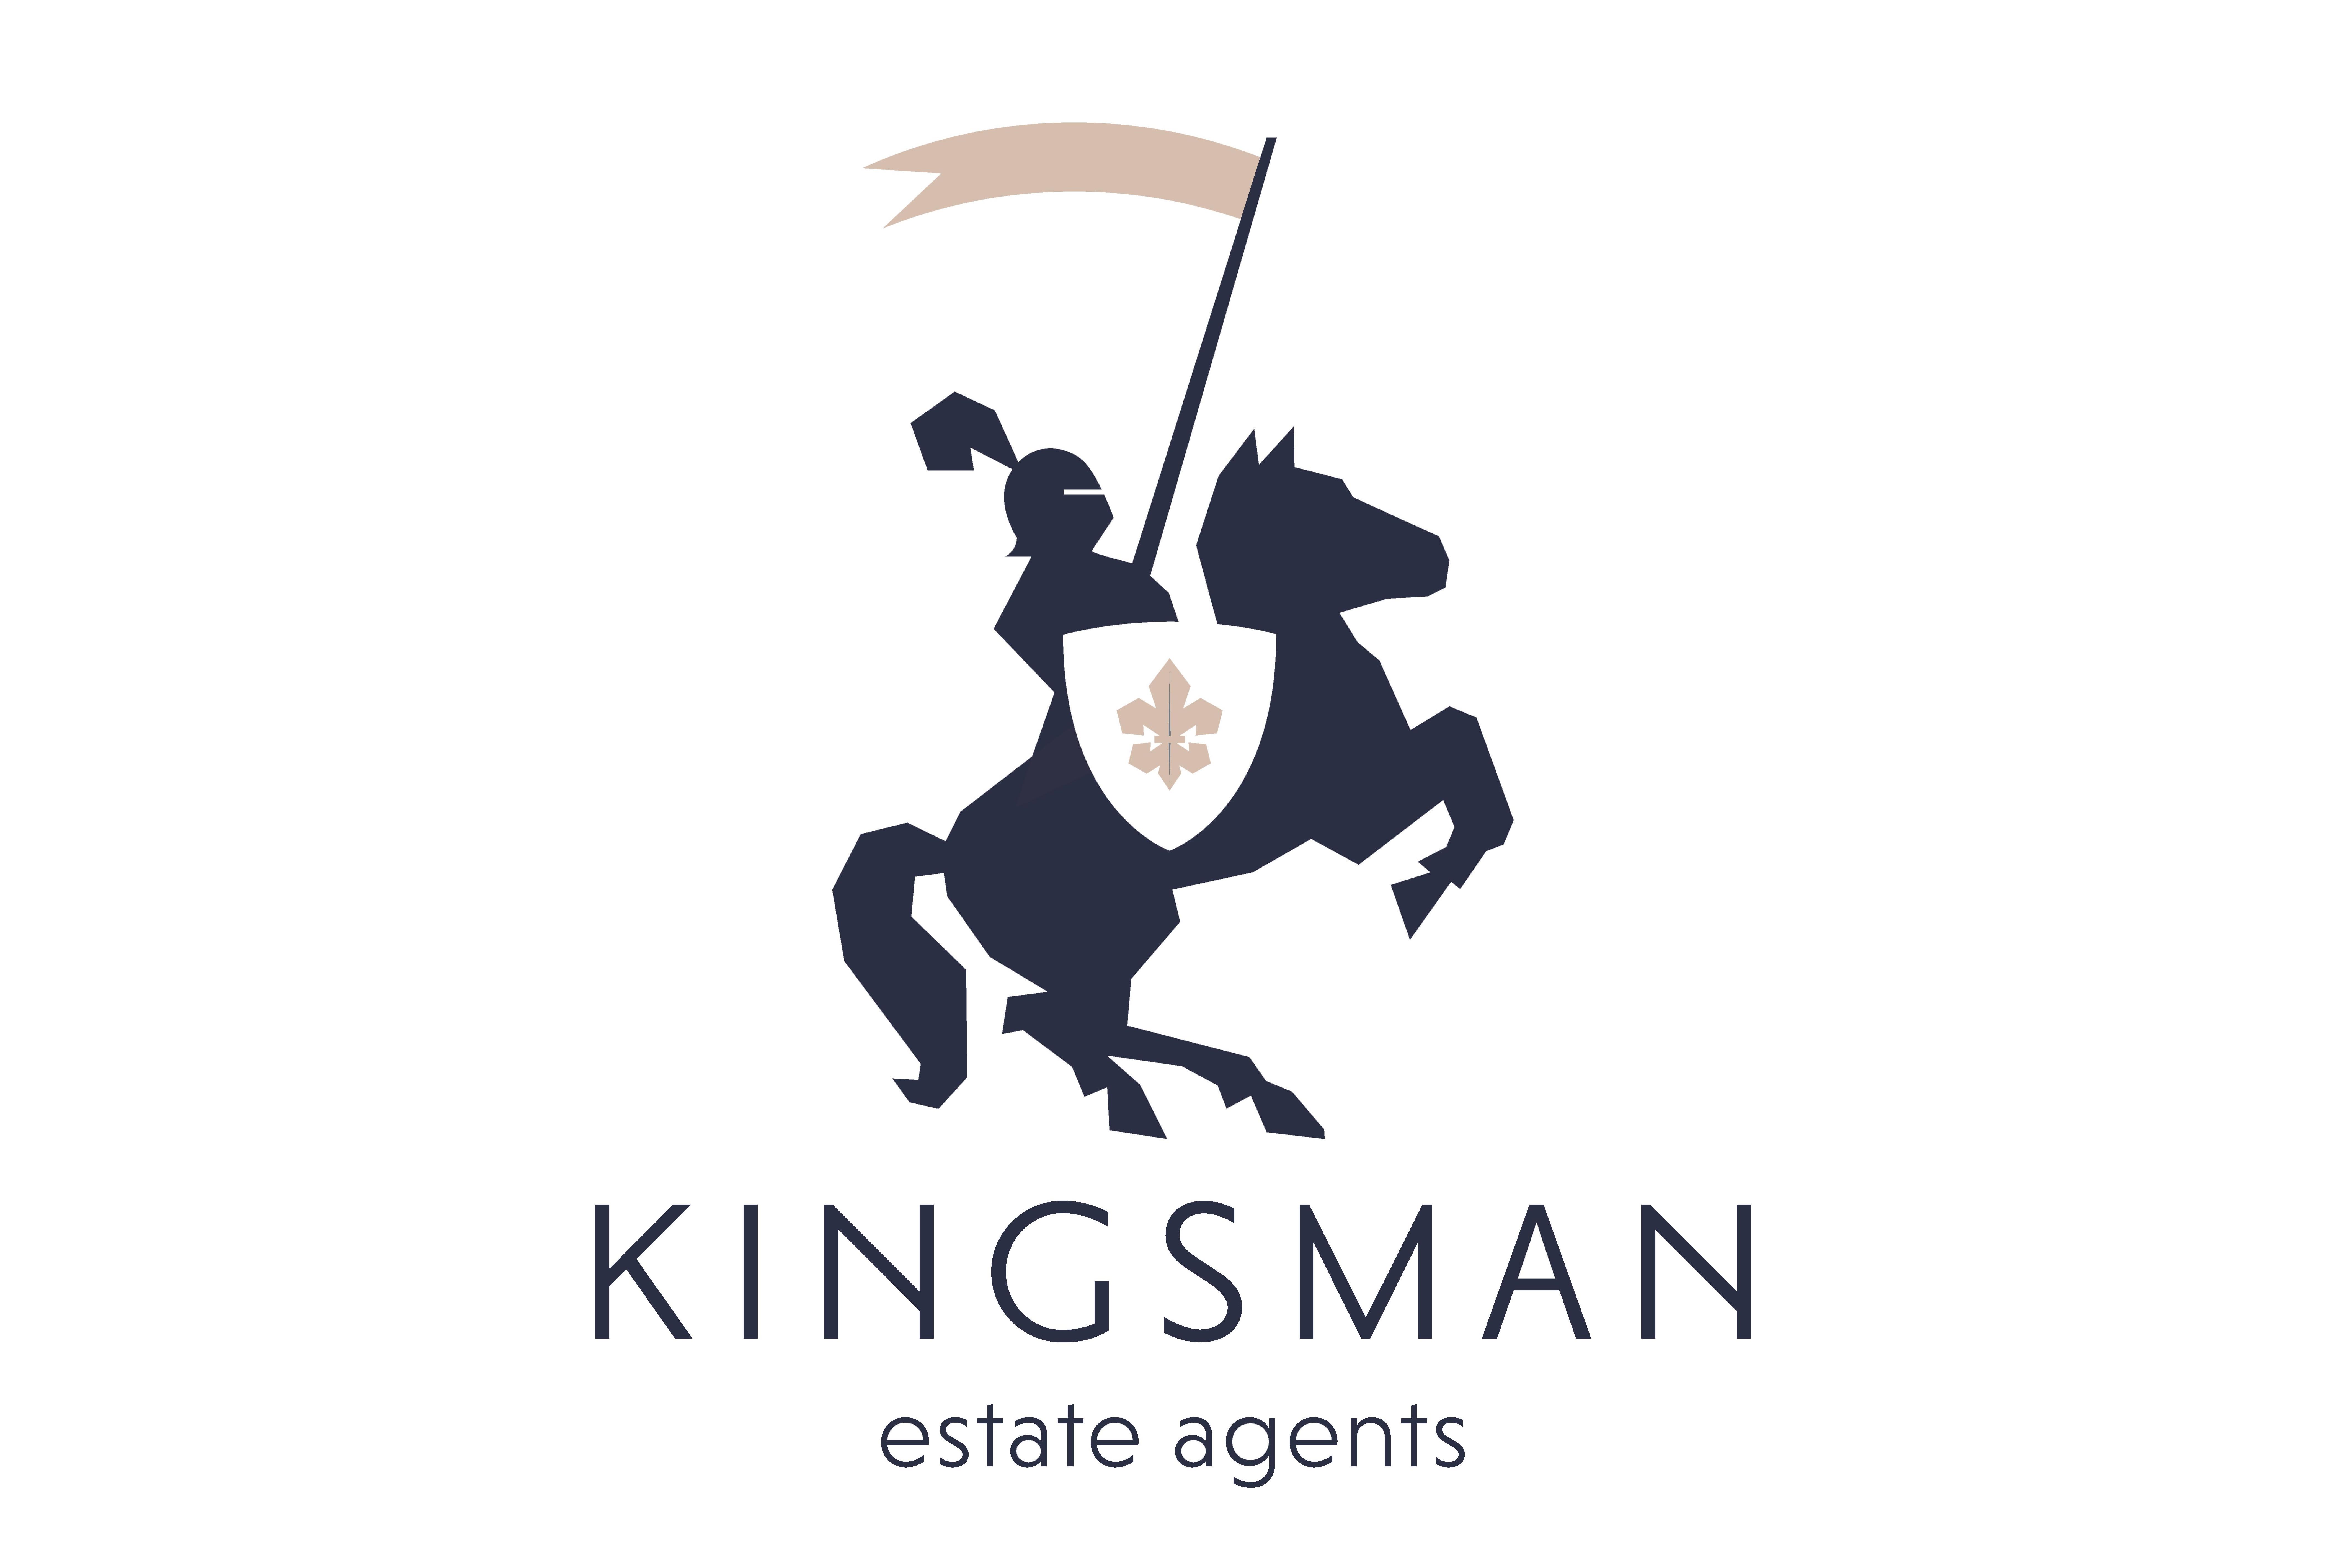 Kingsman Estate Agents Limited